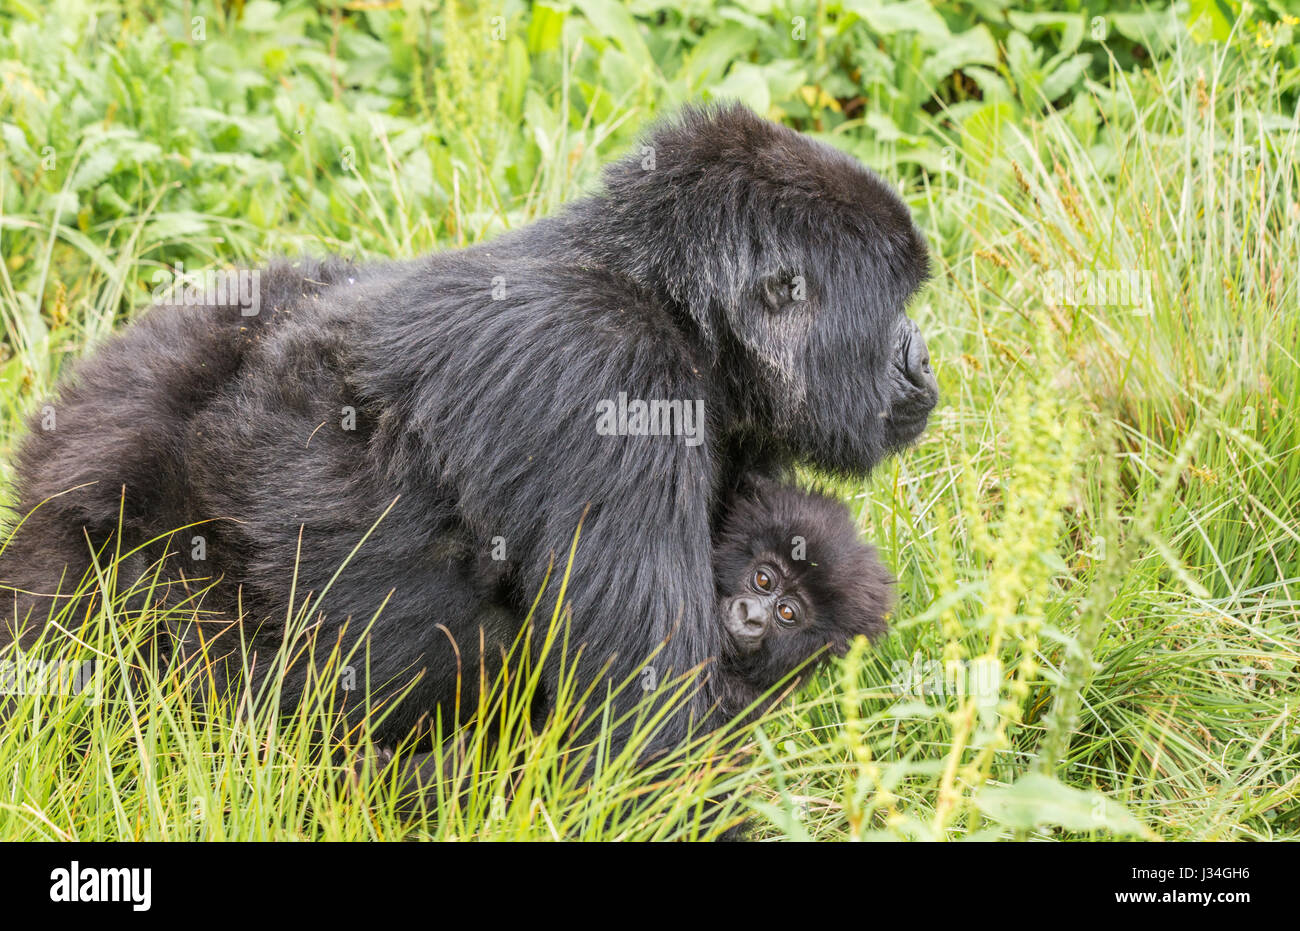 Gorille de montagne en danger critique (Gorilla beringei beringei) la mère et l'enfant du groupe Agashya, prises dans le parc national des volcans, Rwanda Banque D'Images